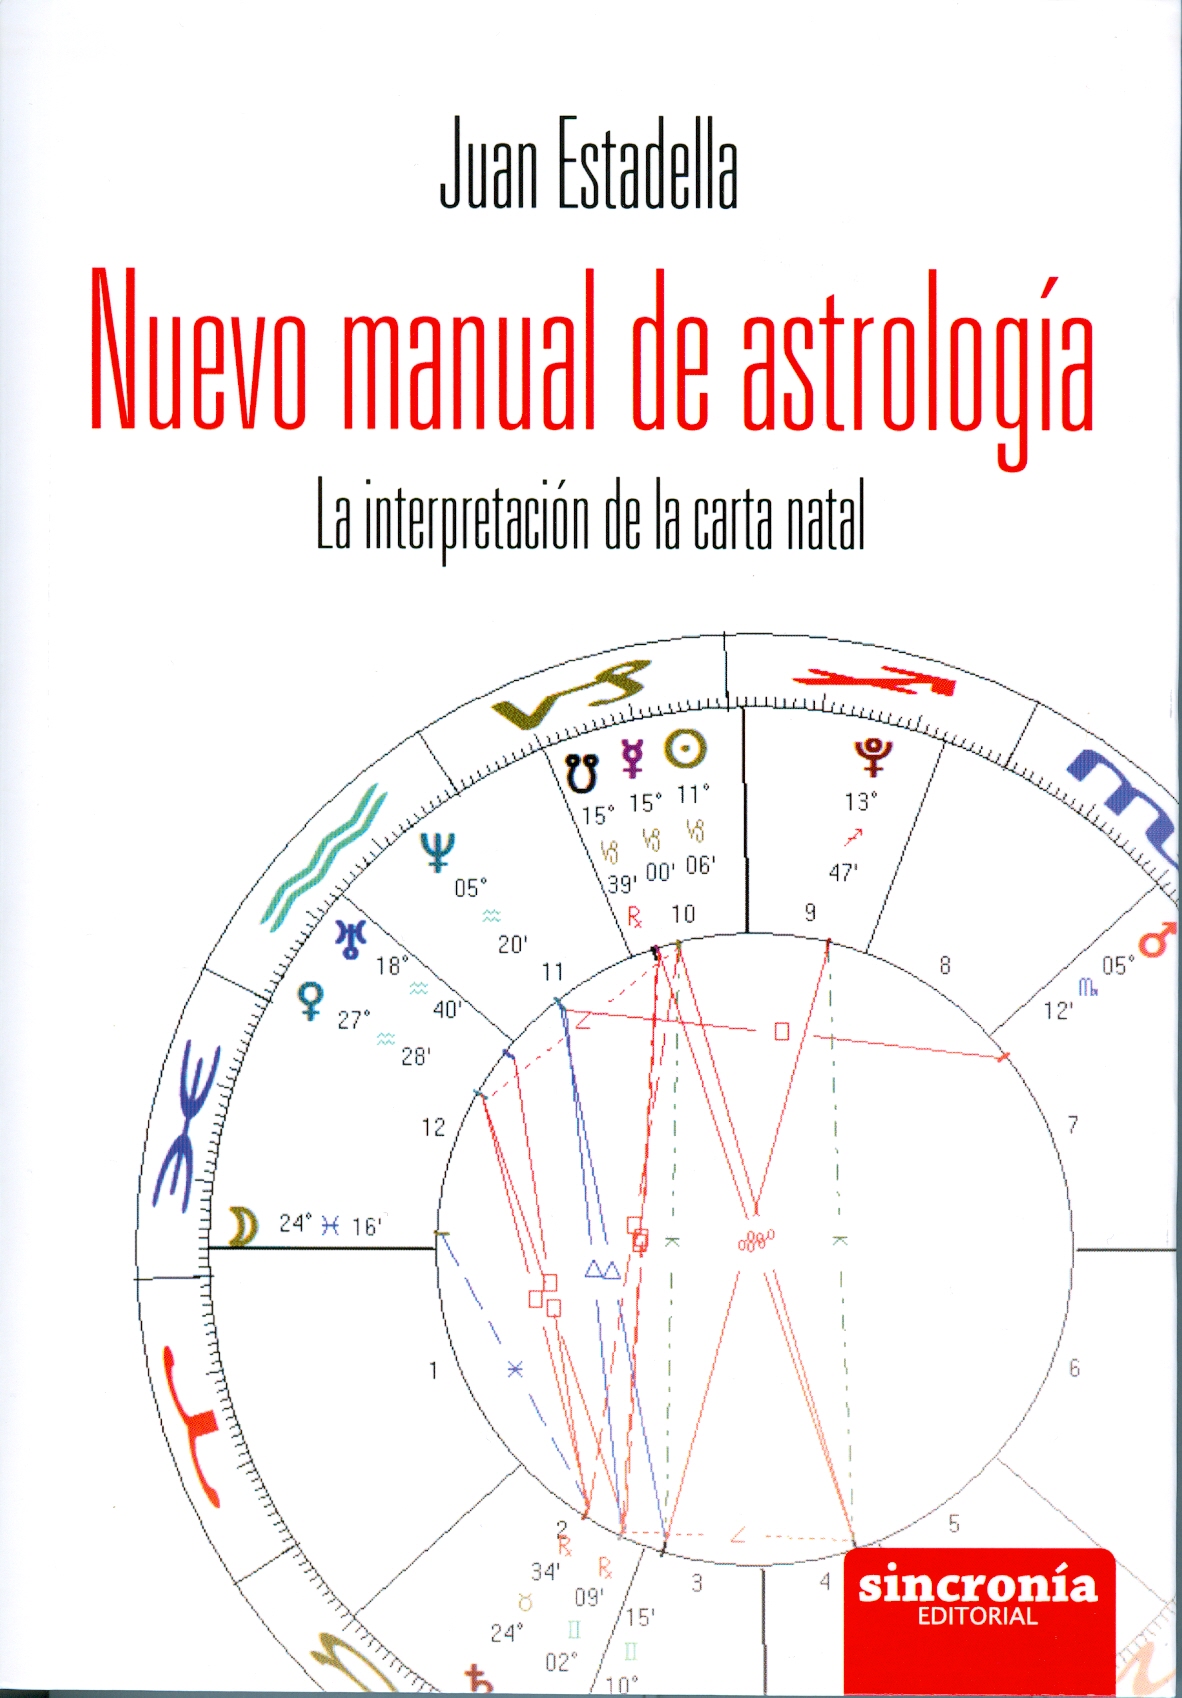 
            Nuevo manual de astrología